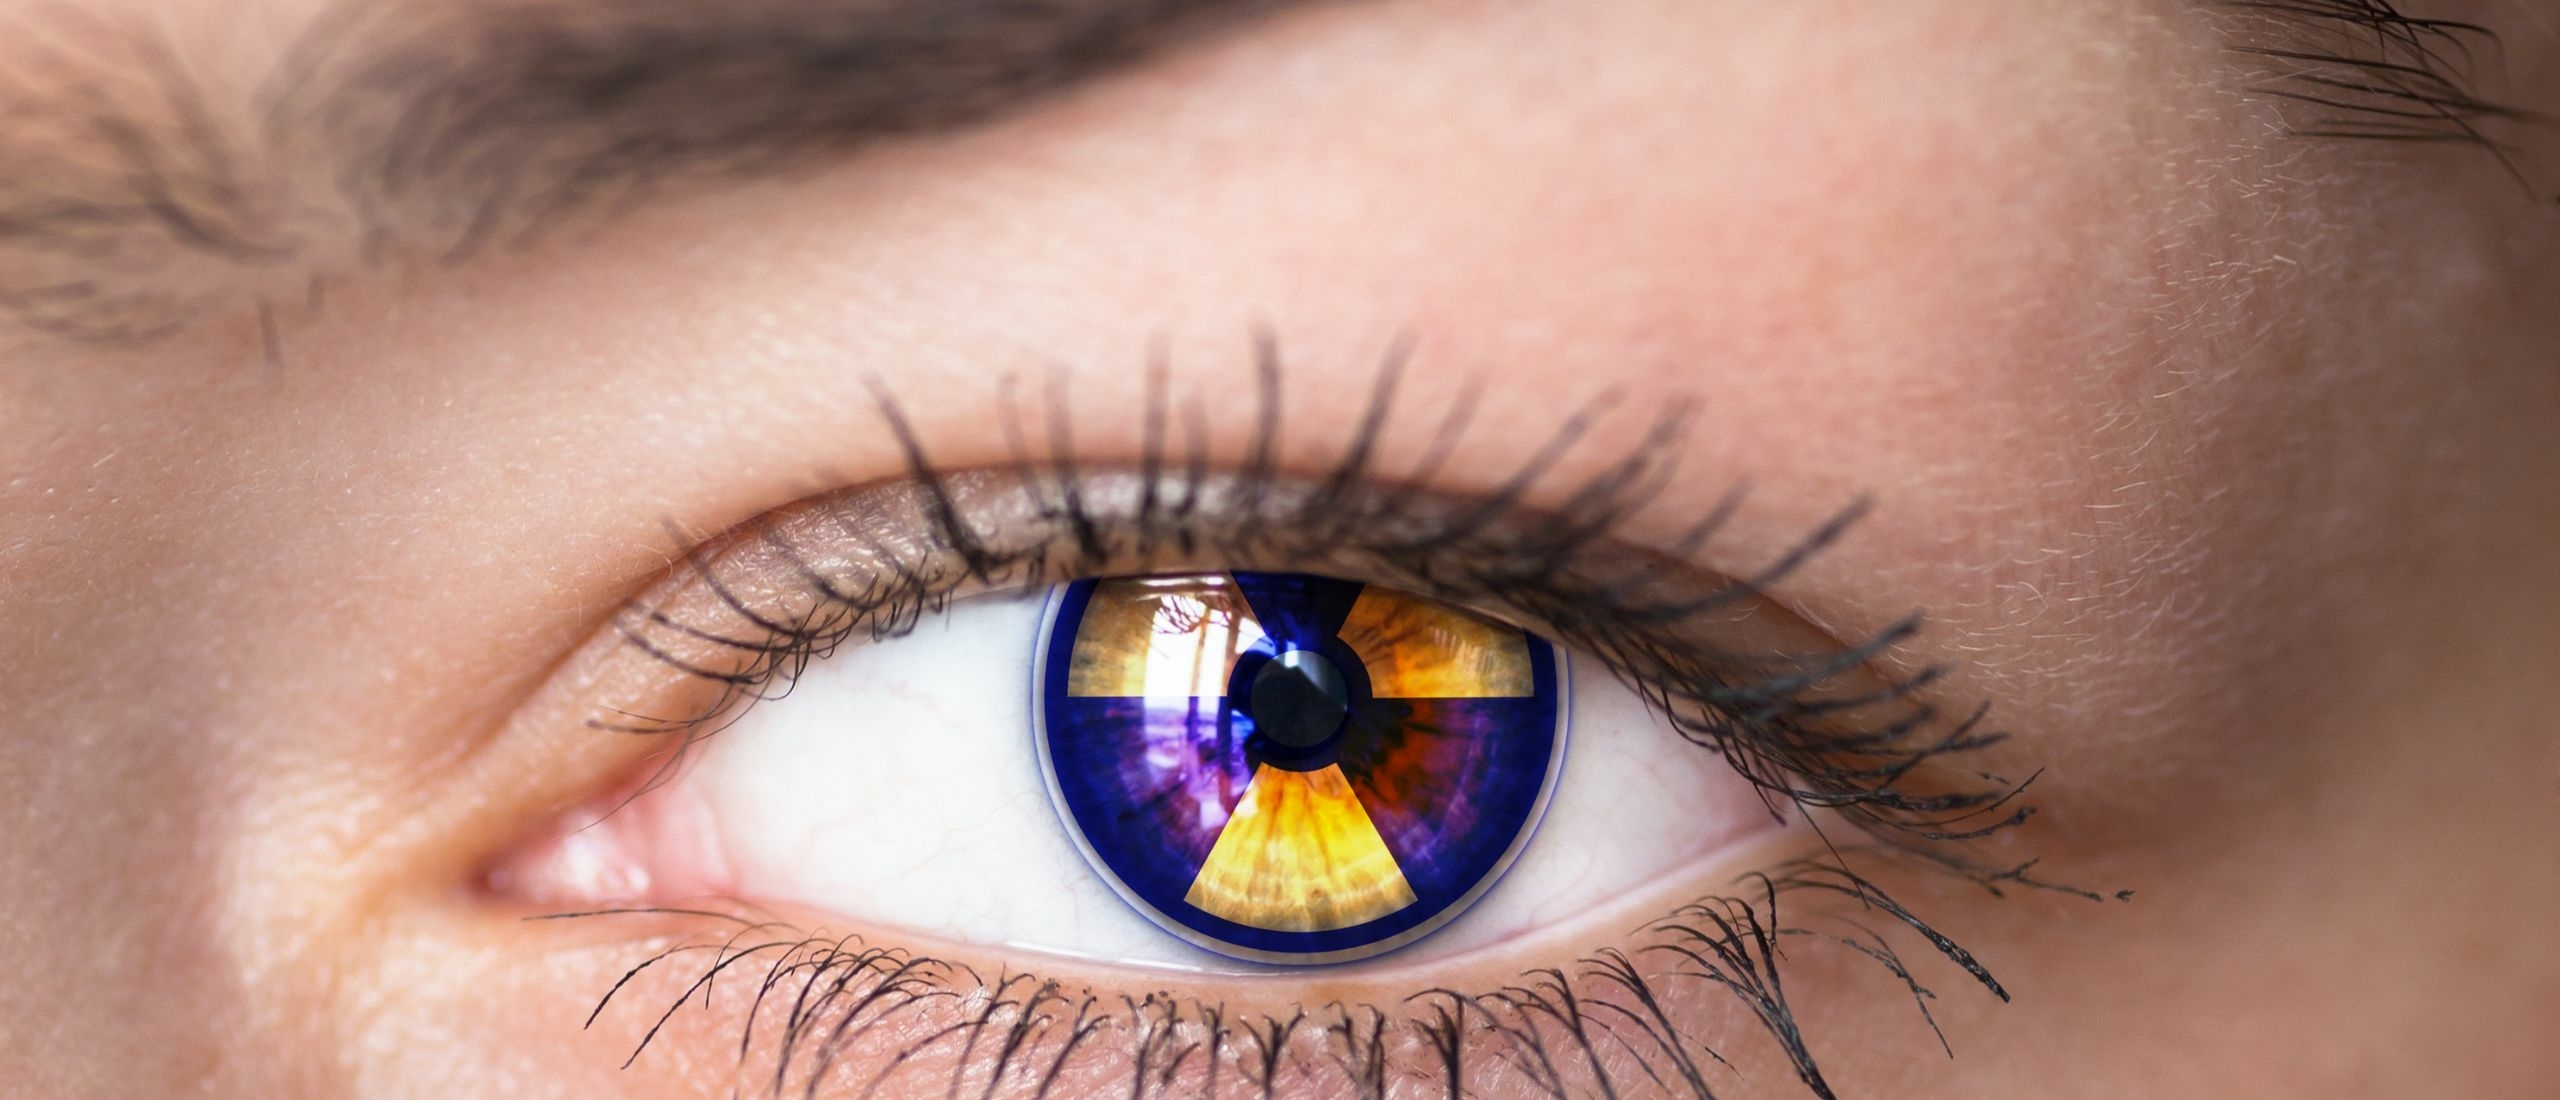 Welke invloed heeft straling op jouw ogen?